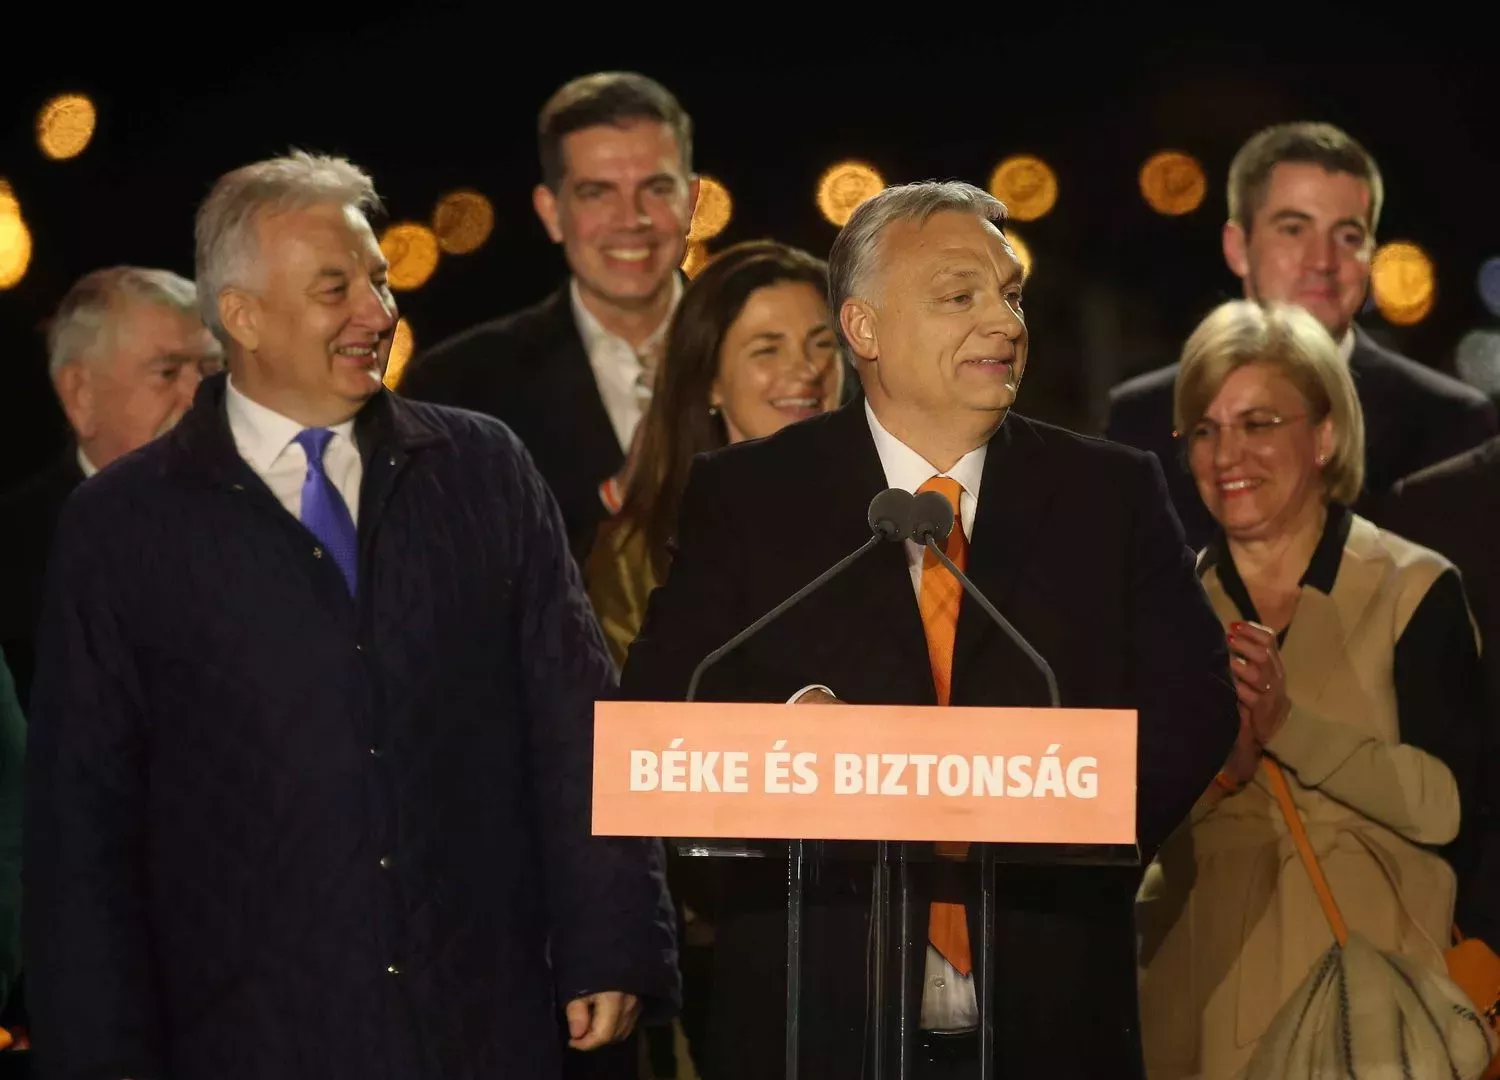 Viktor Orbán /Fidesz/, maďarský premiér